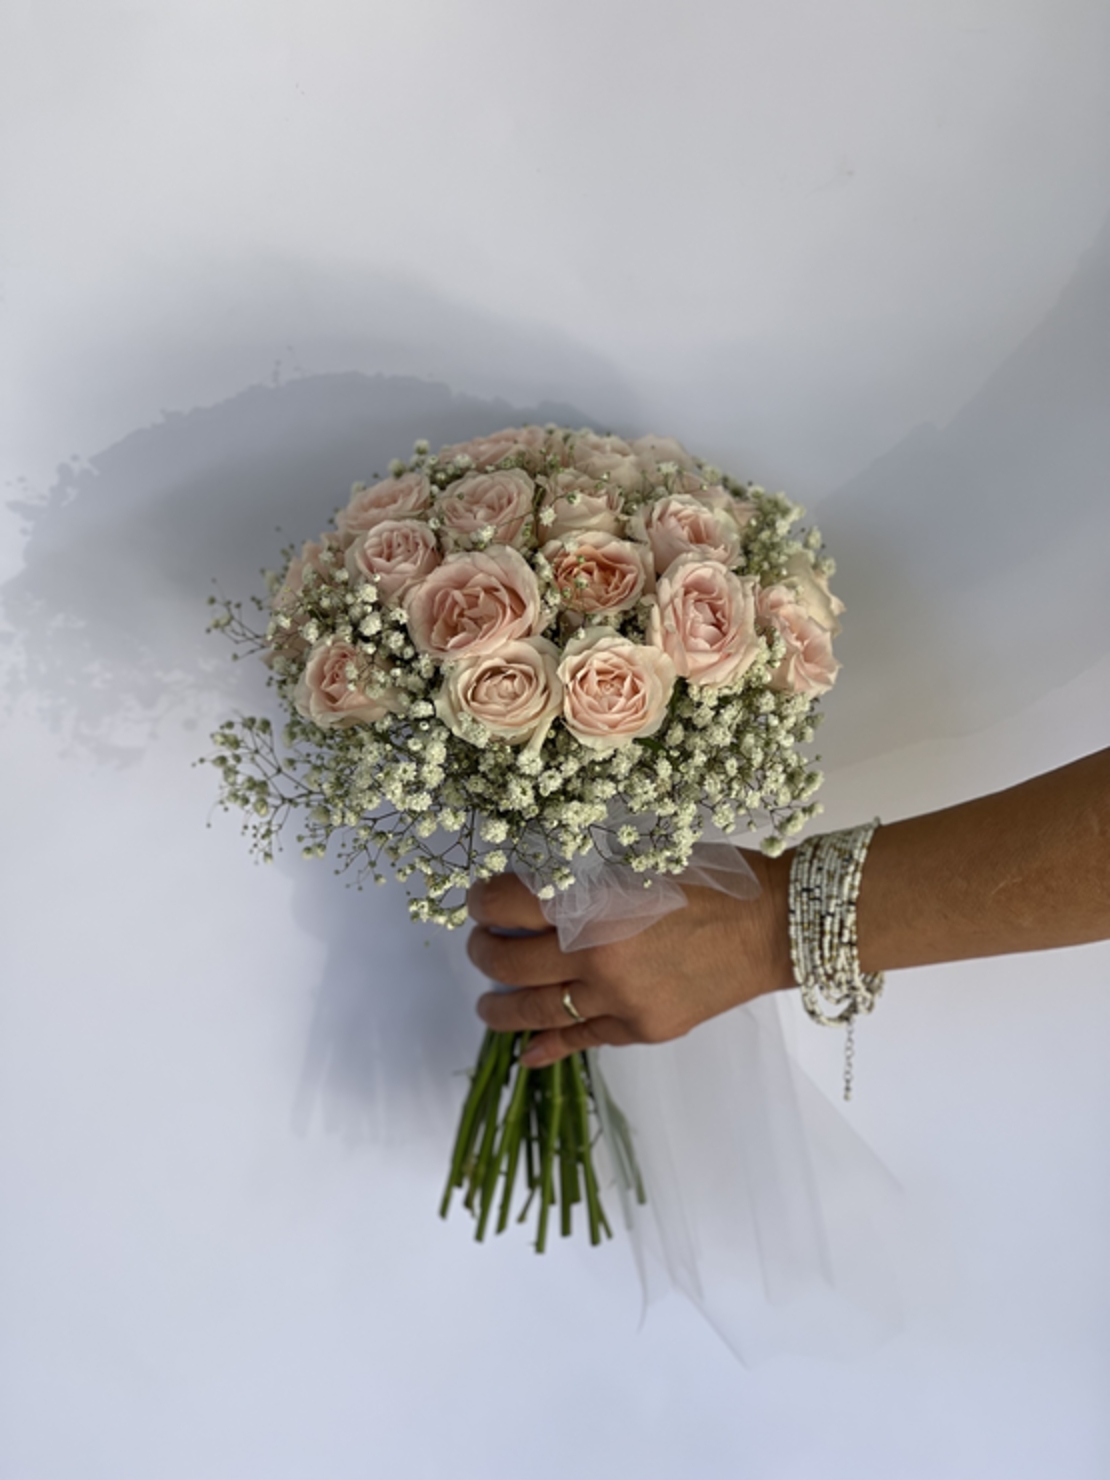 Isabel's bridal bouquet